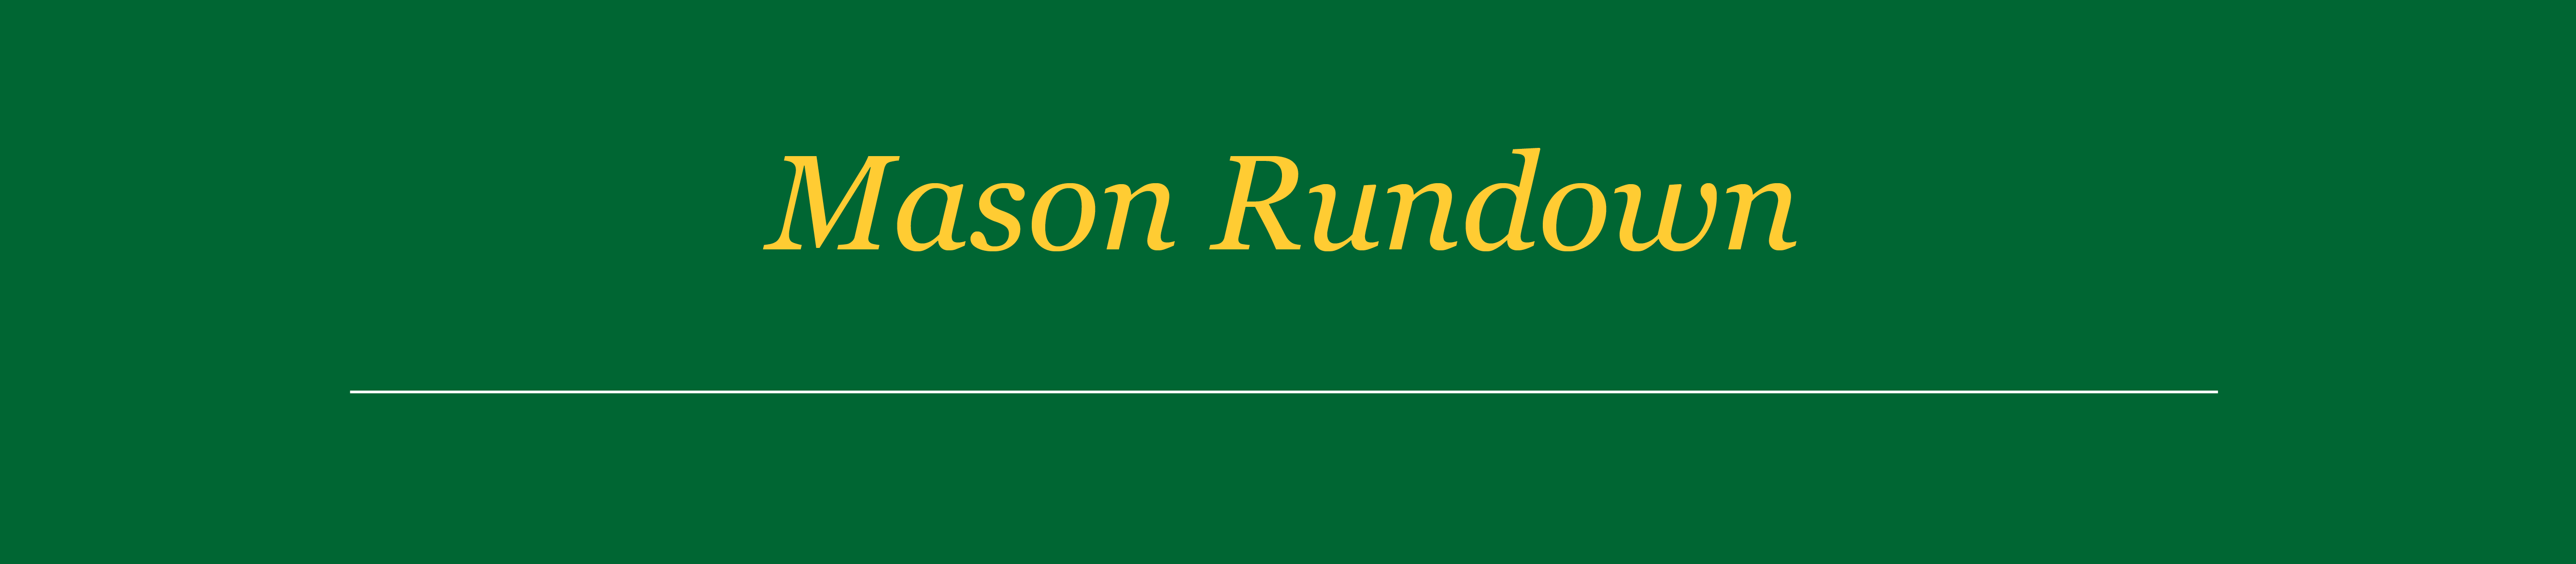 Mason Rundown